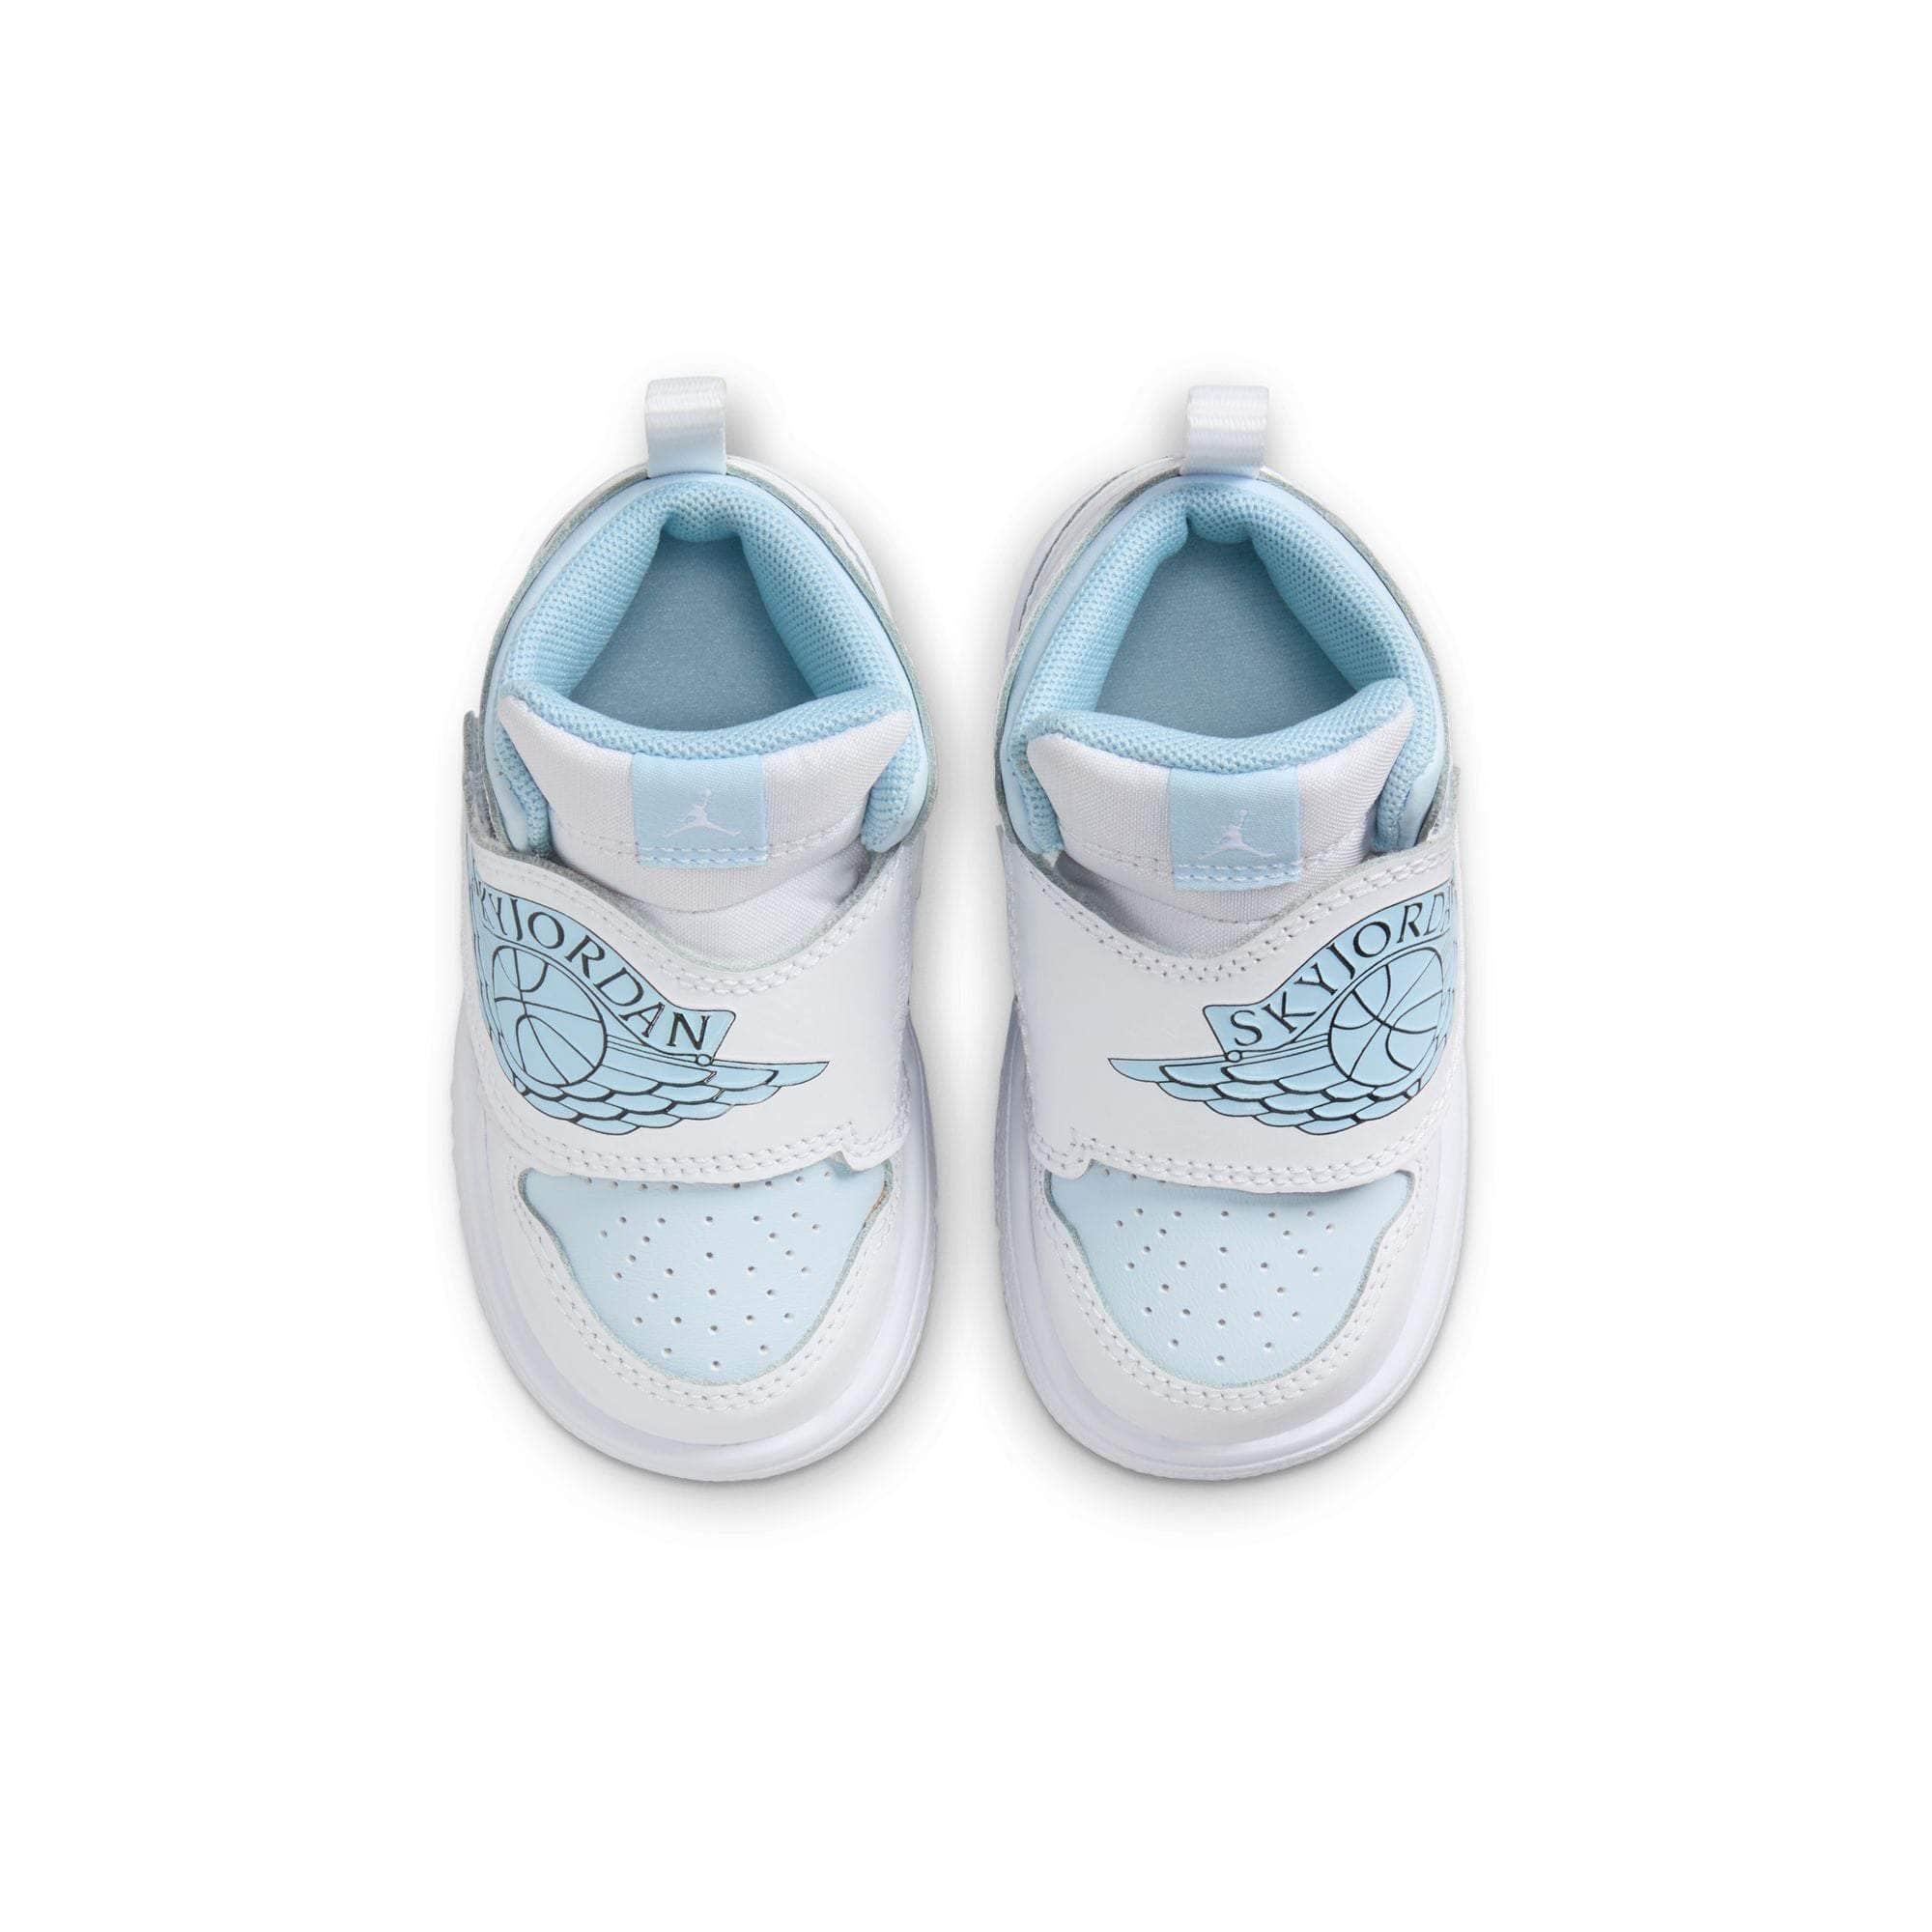 Sky Jordan 1 'Blue Tint' - Toddler's - GBNY